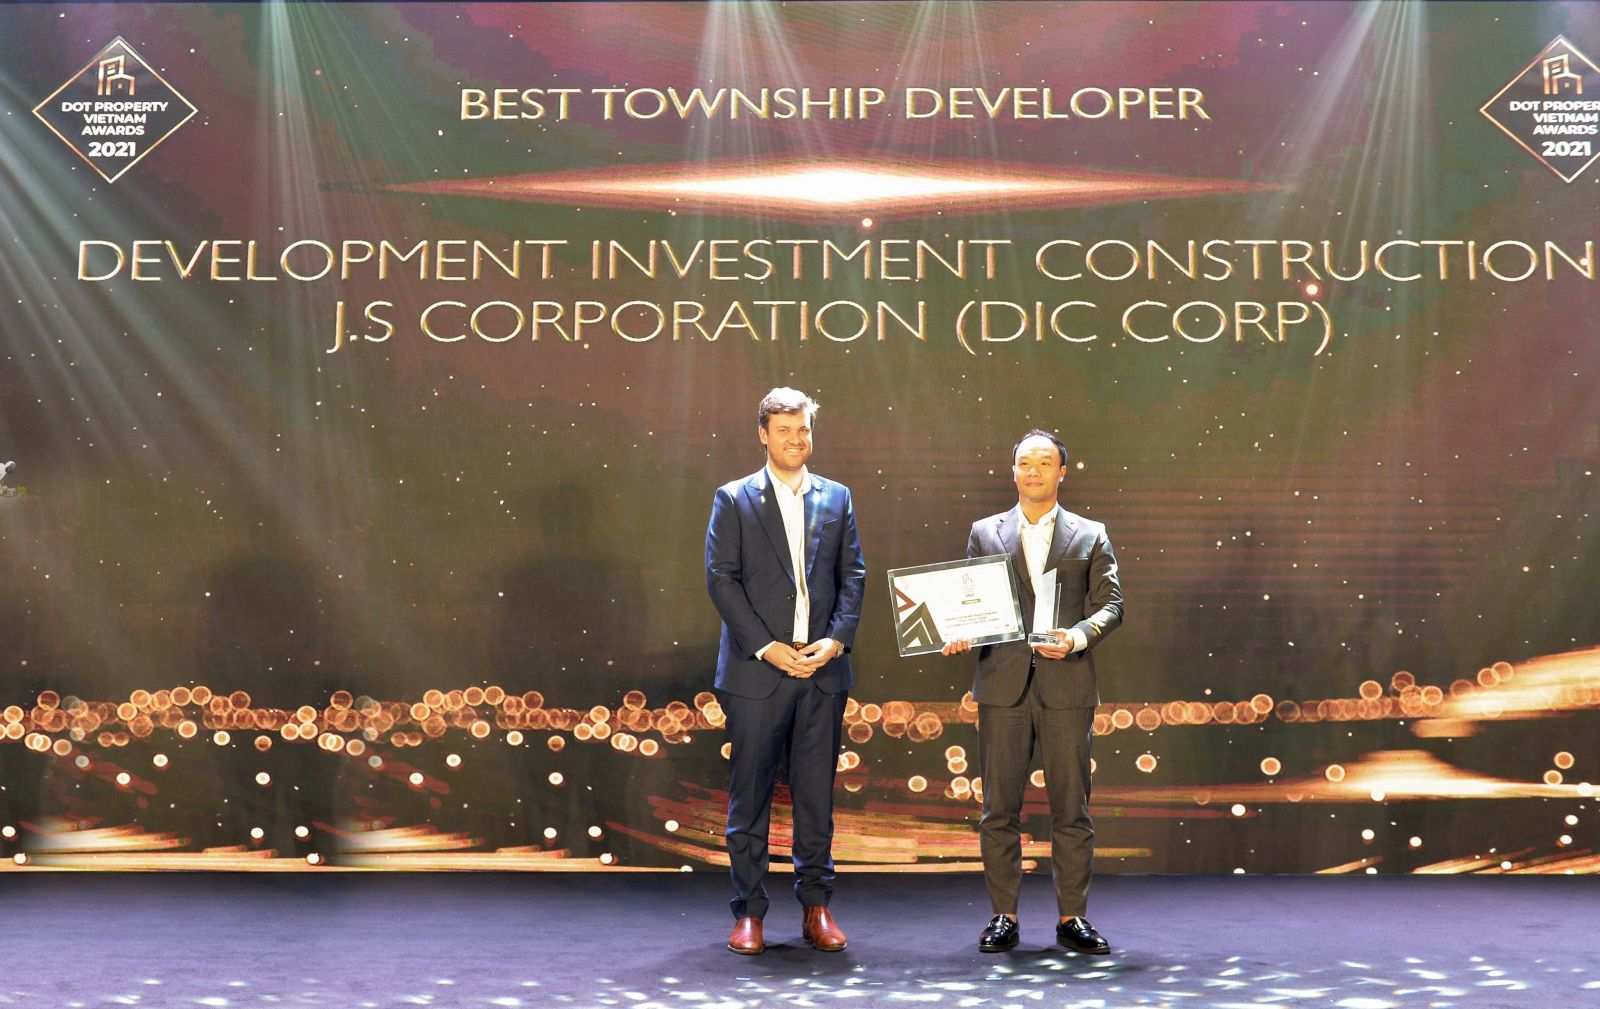 Đại diện Tập đoàn DIC đón nhận giải thưởng “Nhà phát triển đô thị xuất sắc nhất 2021” (Best Township Developer Vietnam 2021)